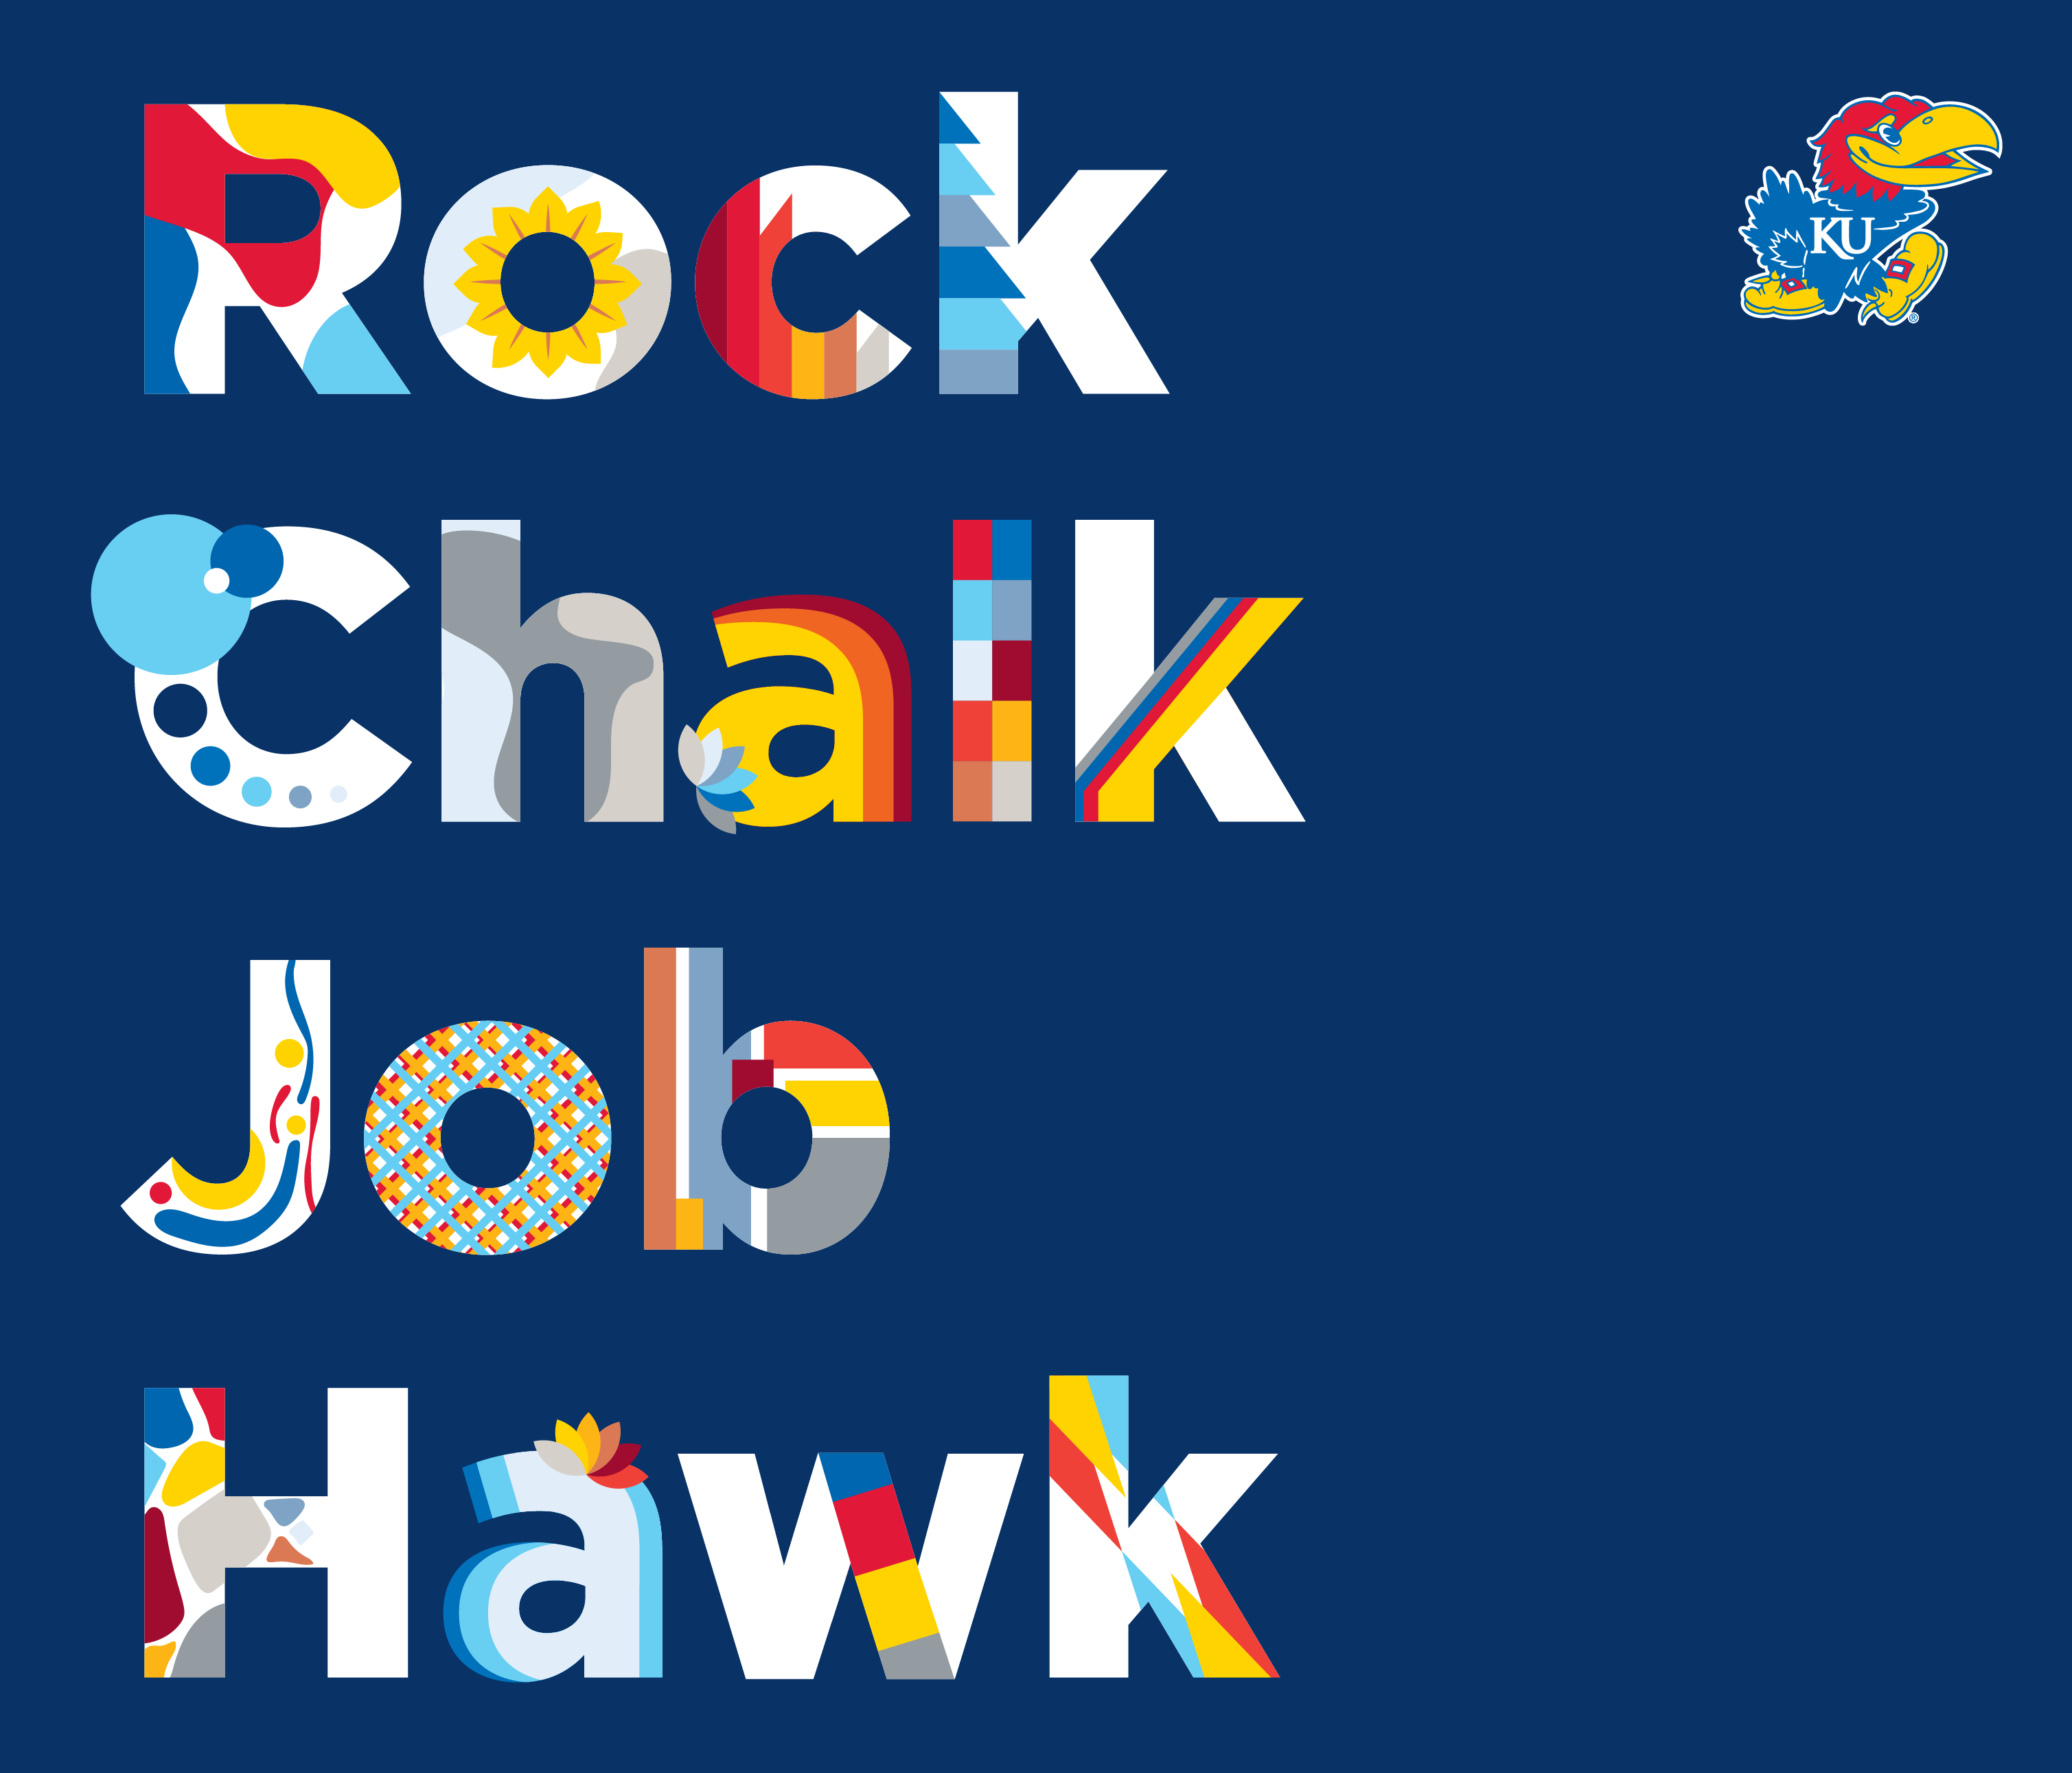 Rock Chalk Job Hawk